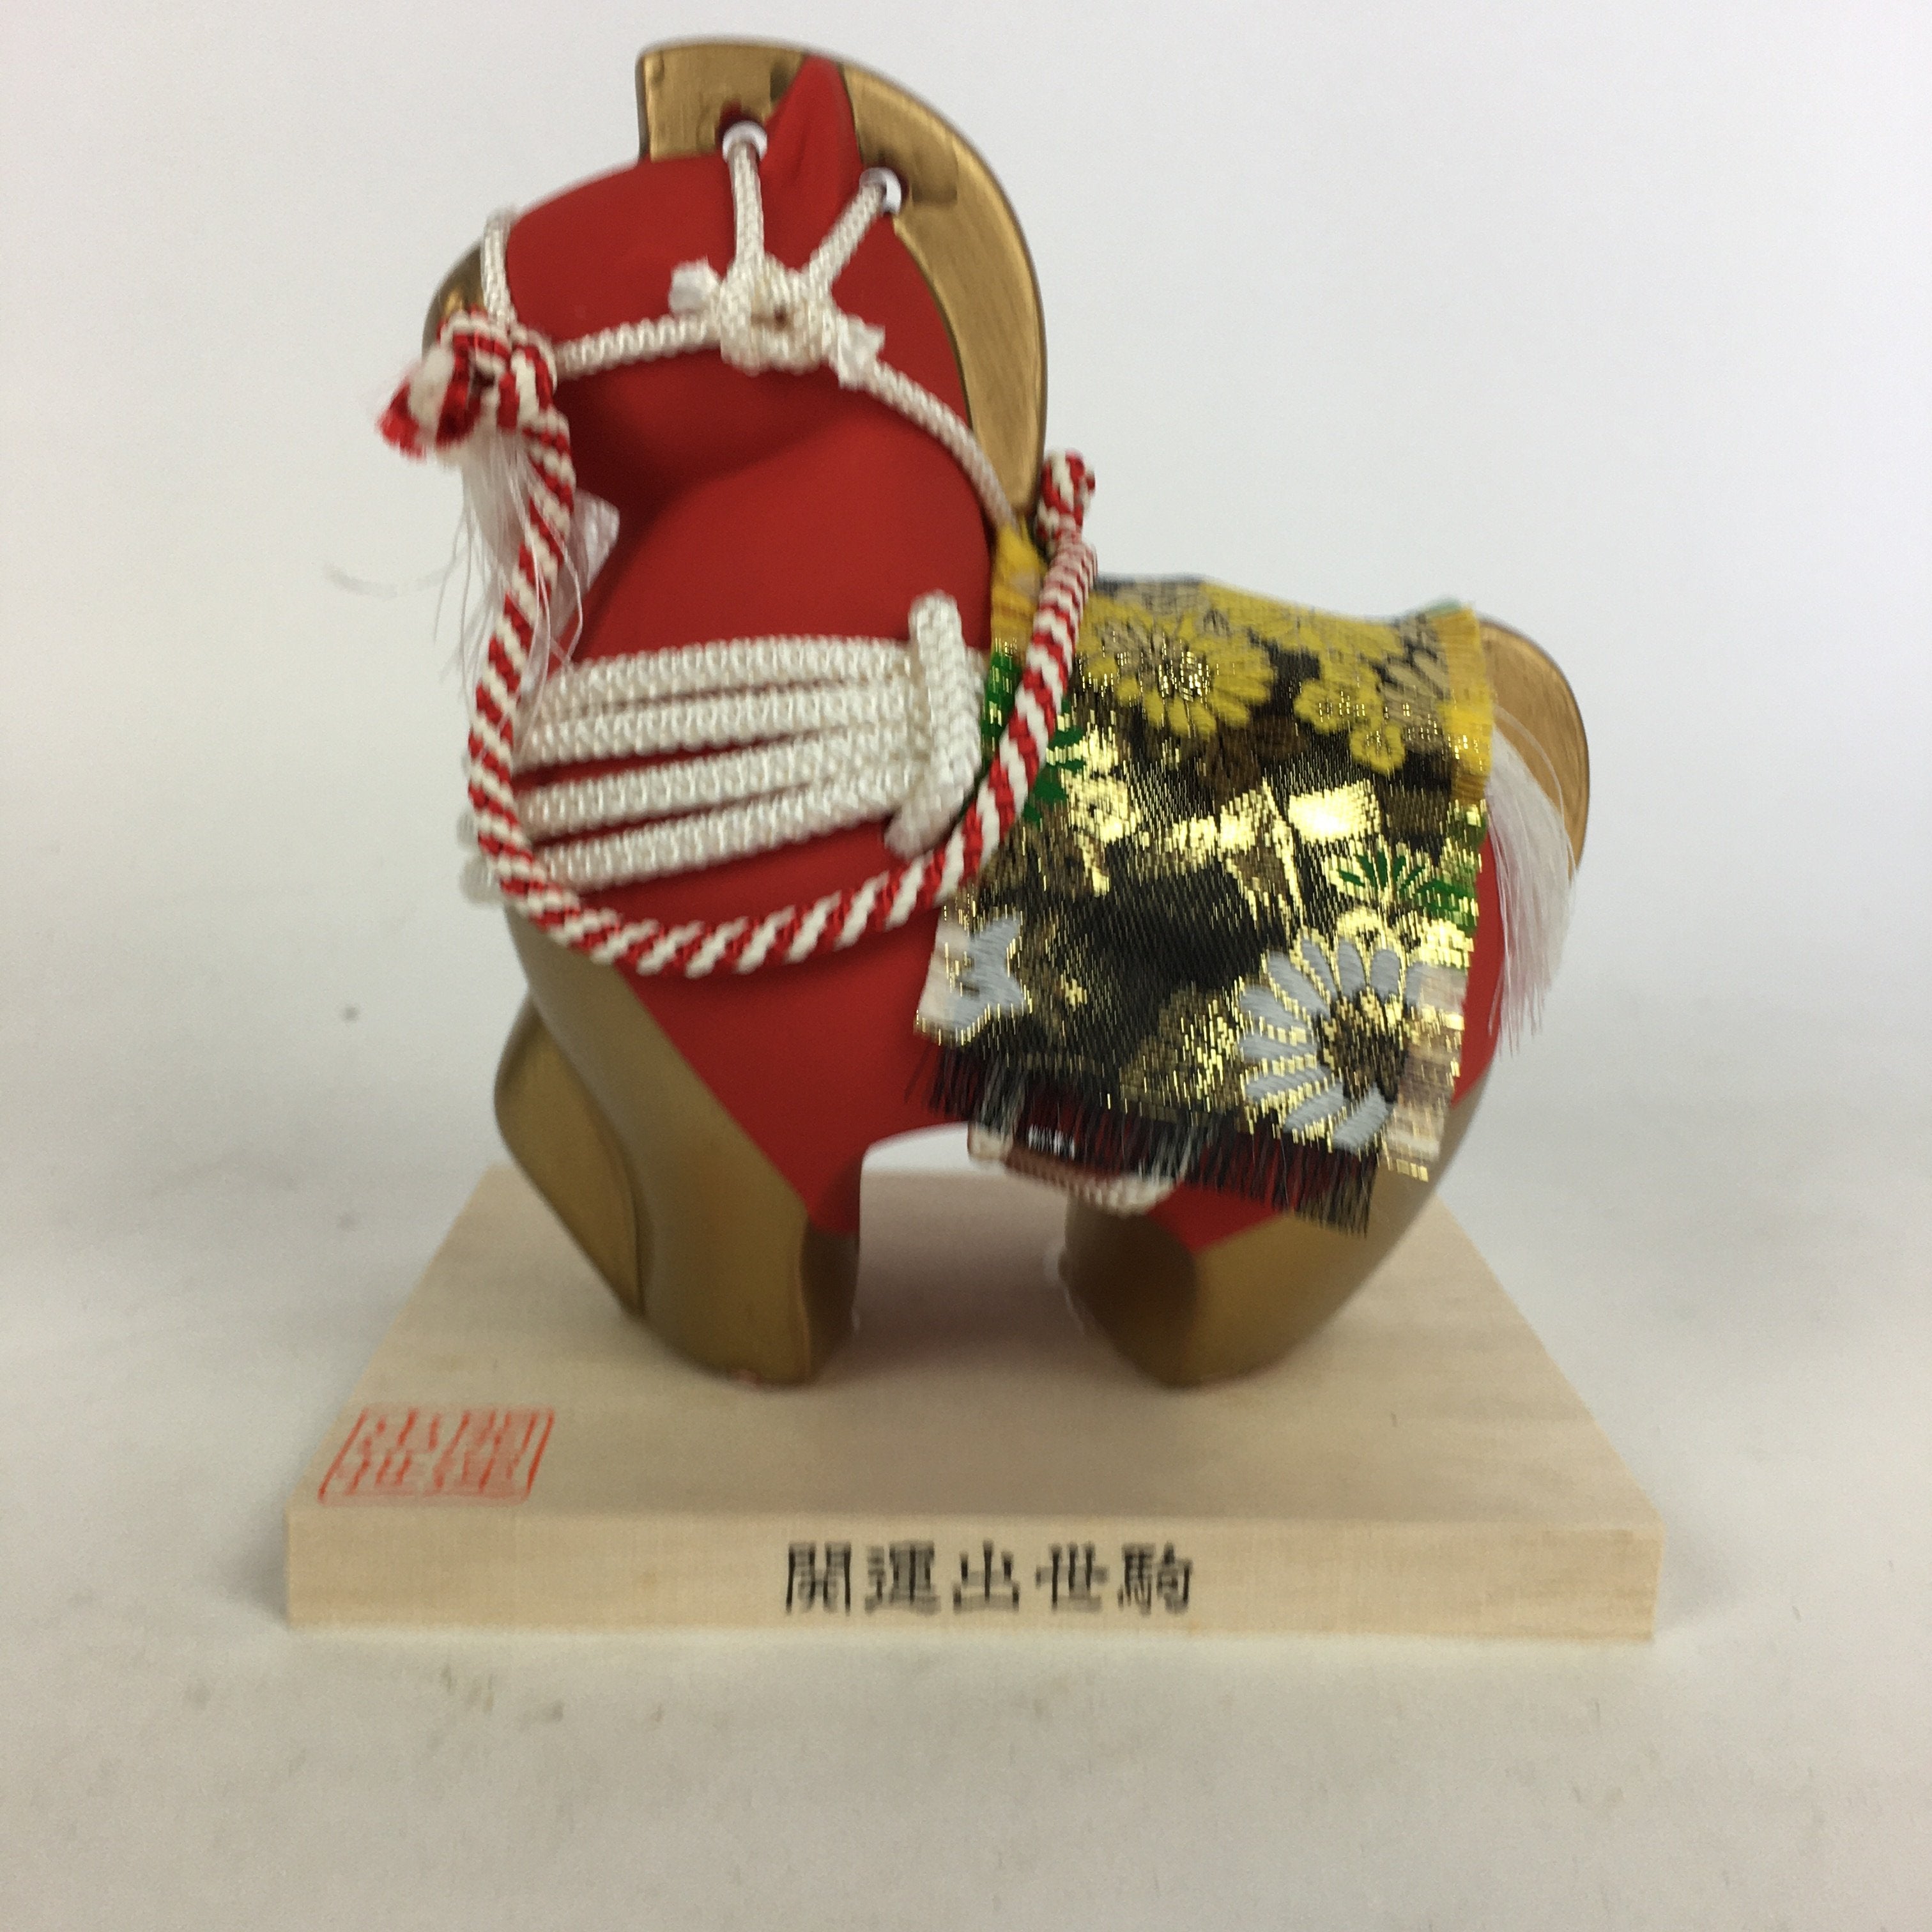 Japanese Ceramic Horse Statue Vtg Pottery Lucky Charm Kaiunshussegoma BD657